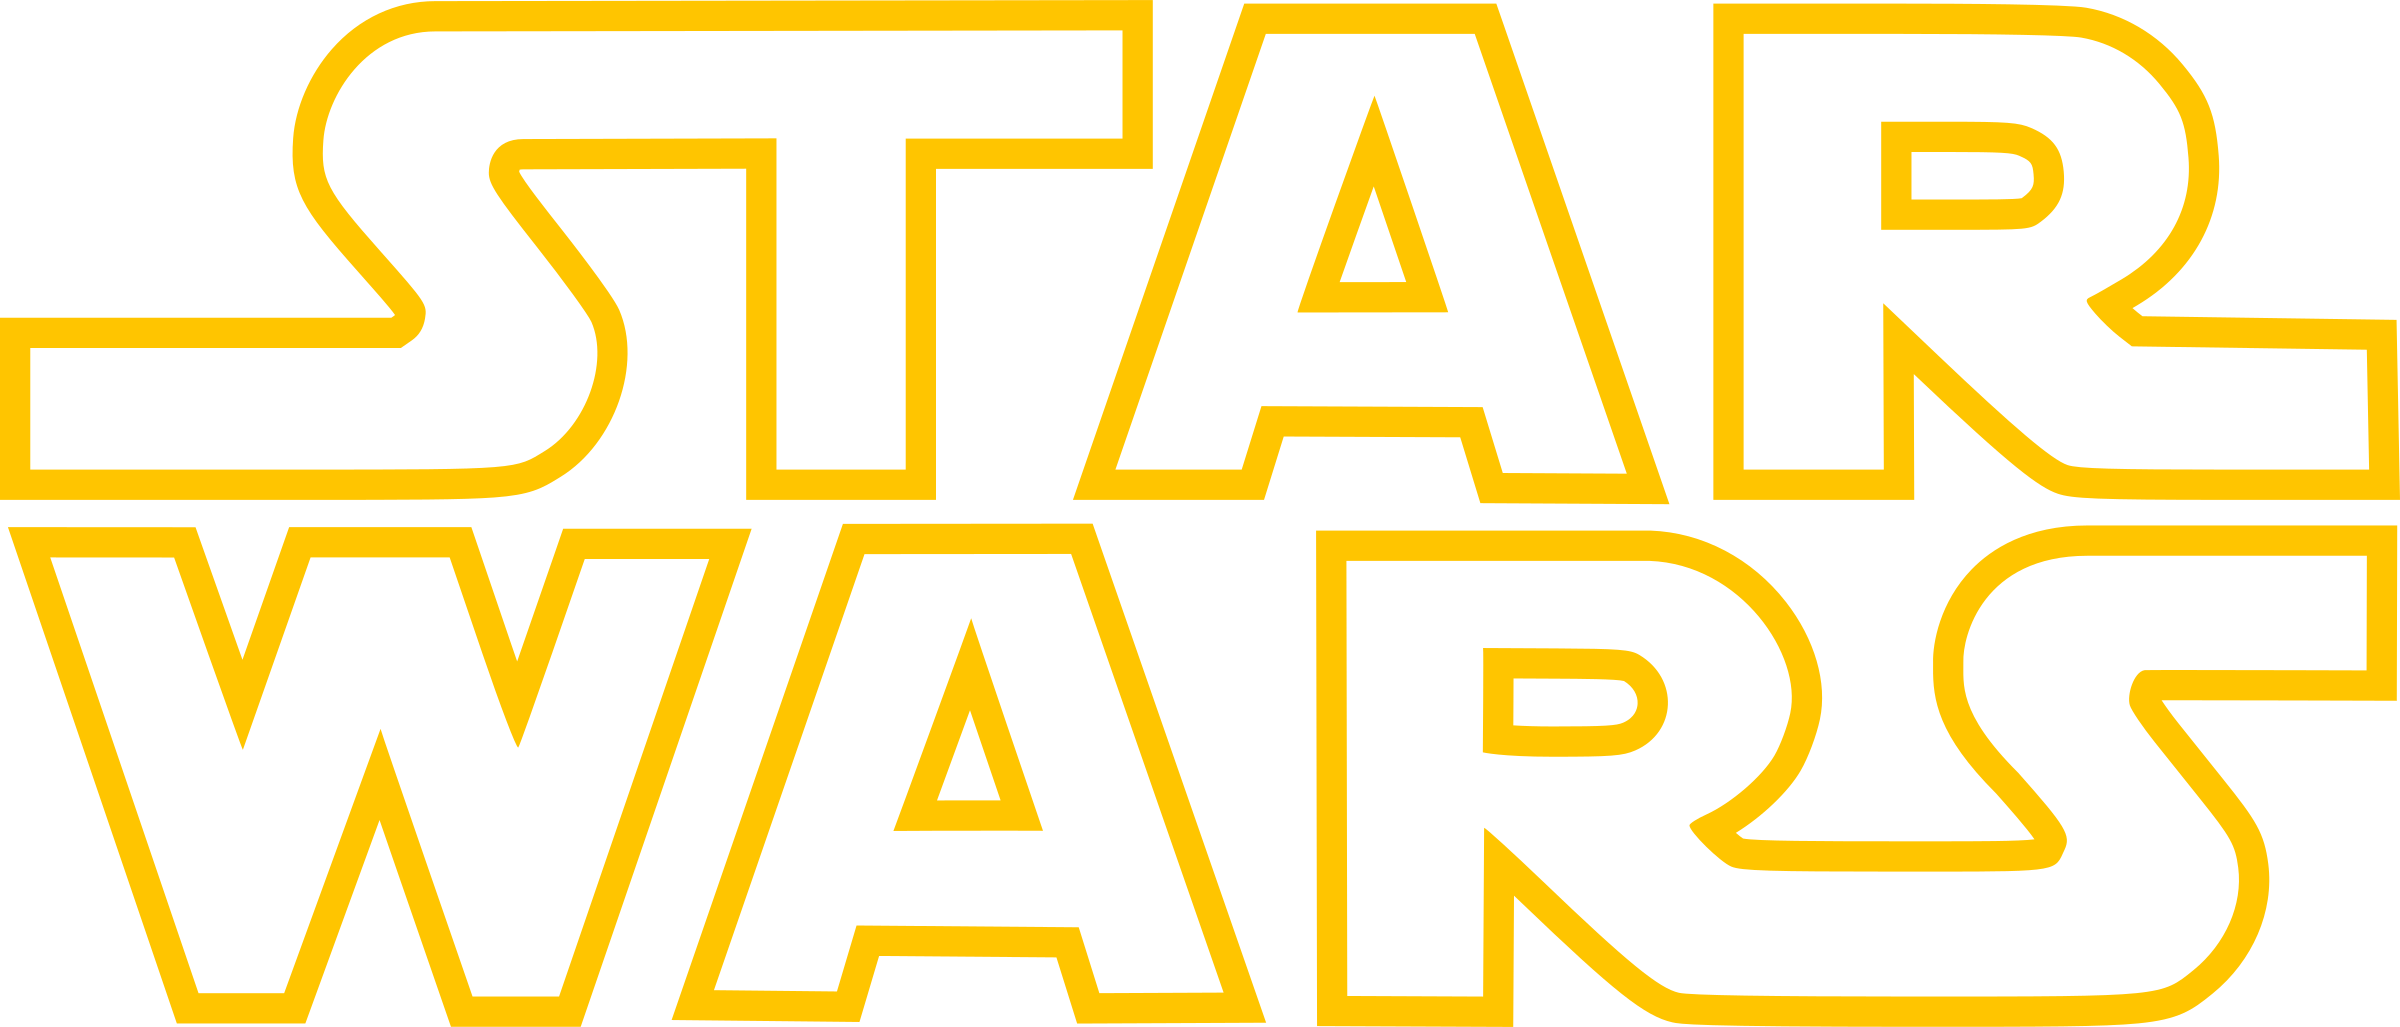 Star Wars Logo PNG Gambar berkualitas tinggi